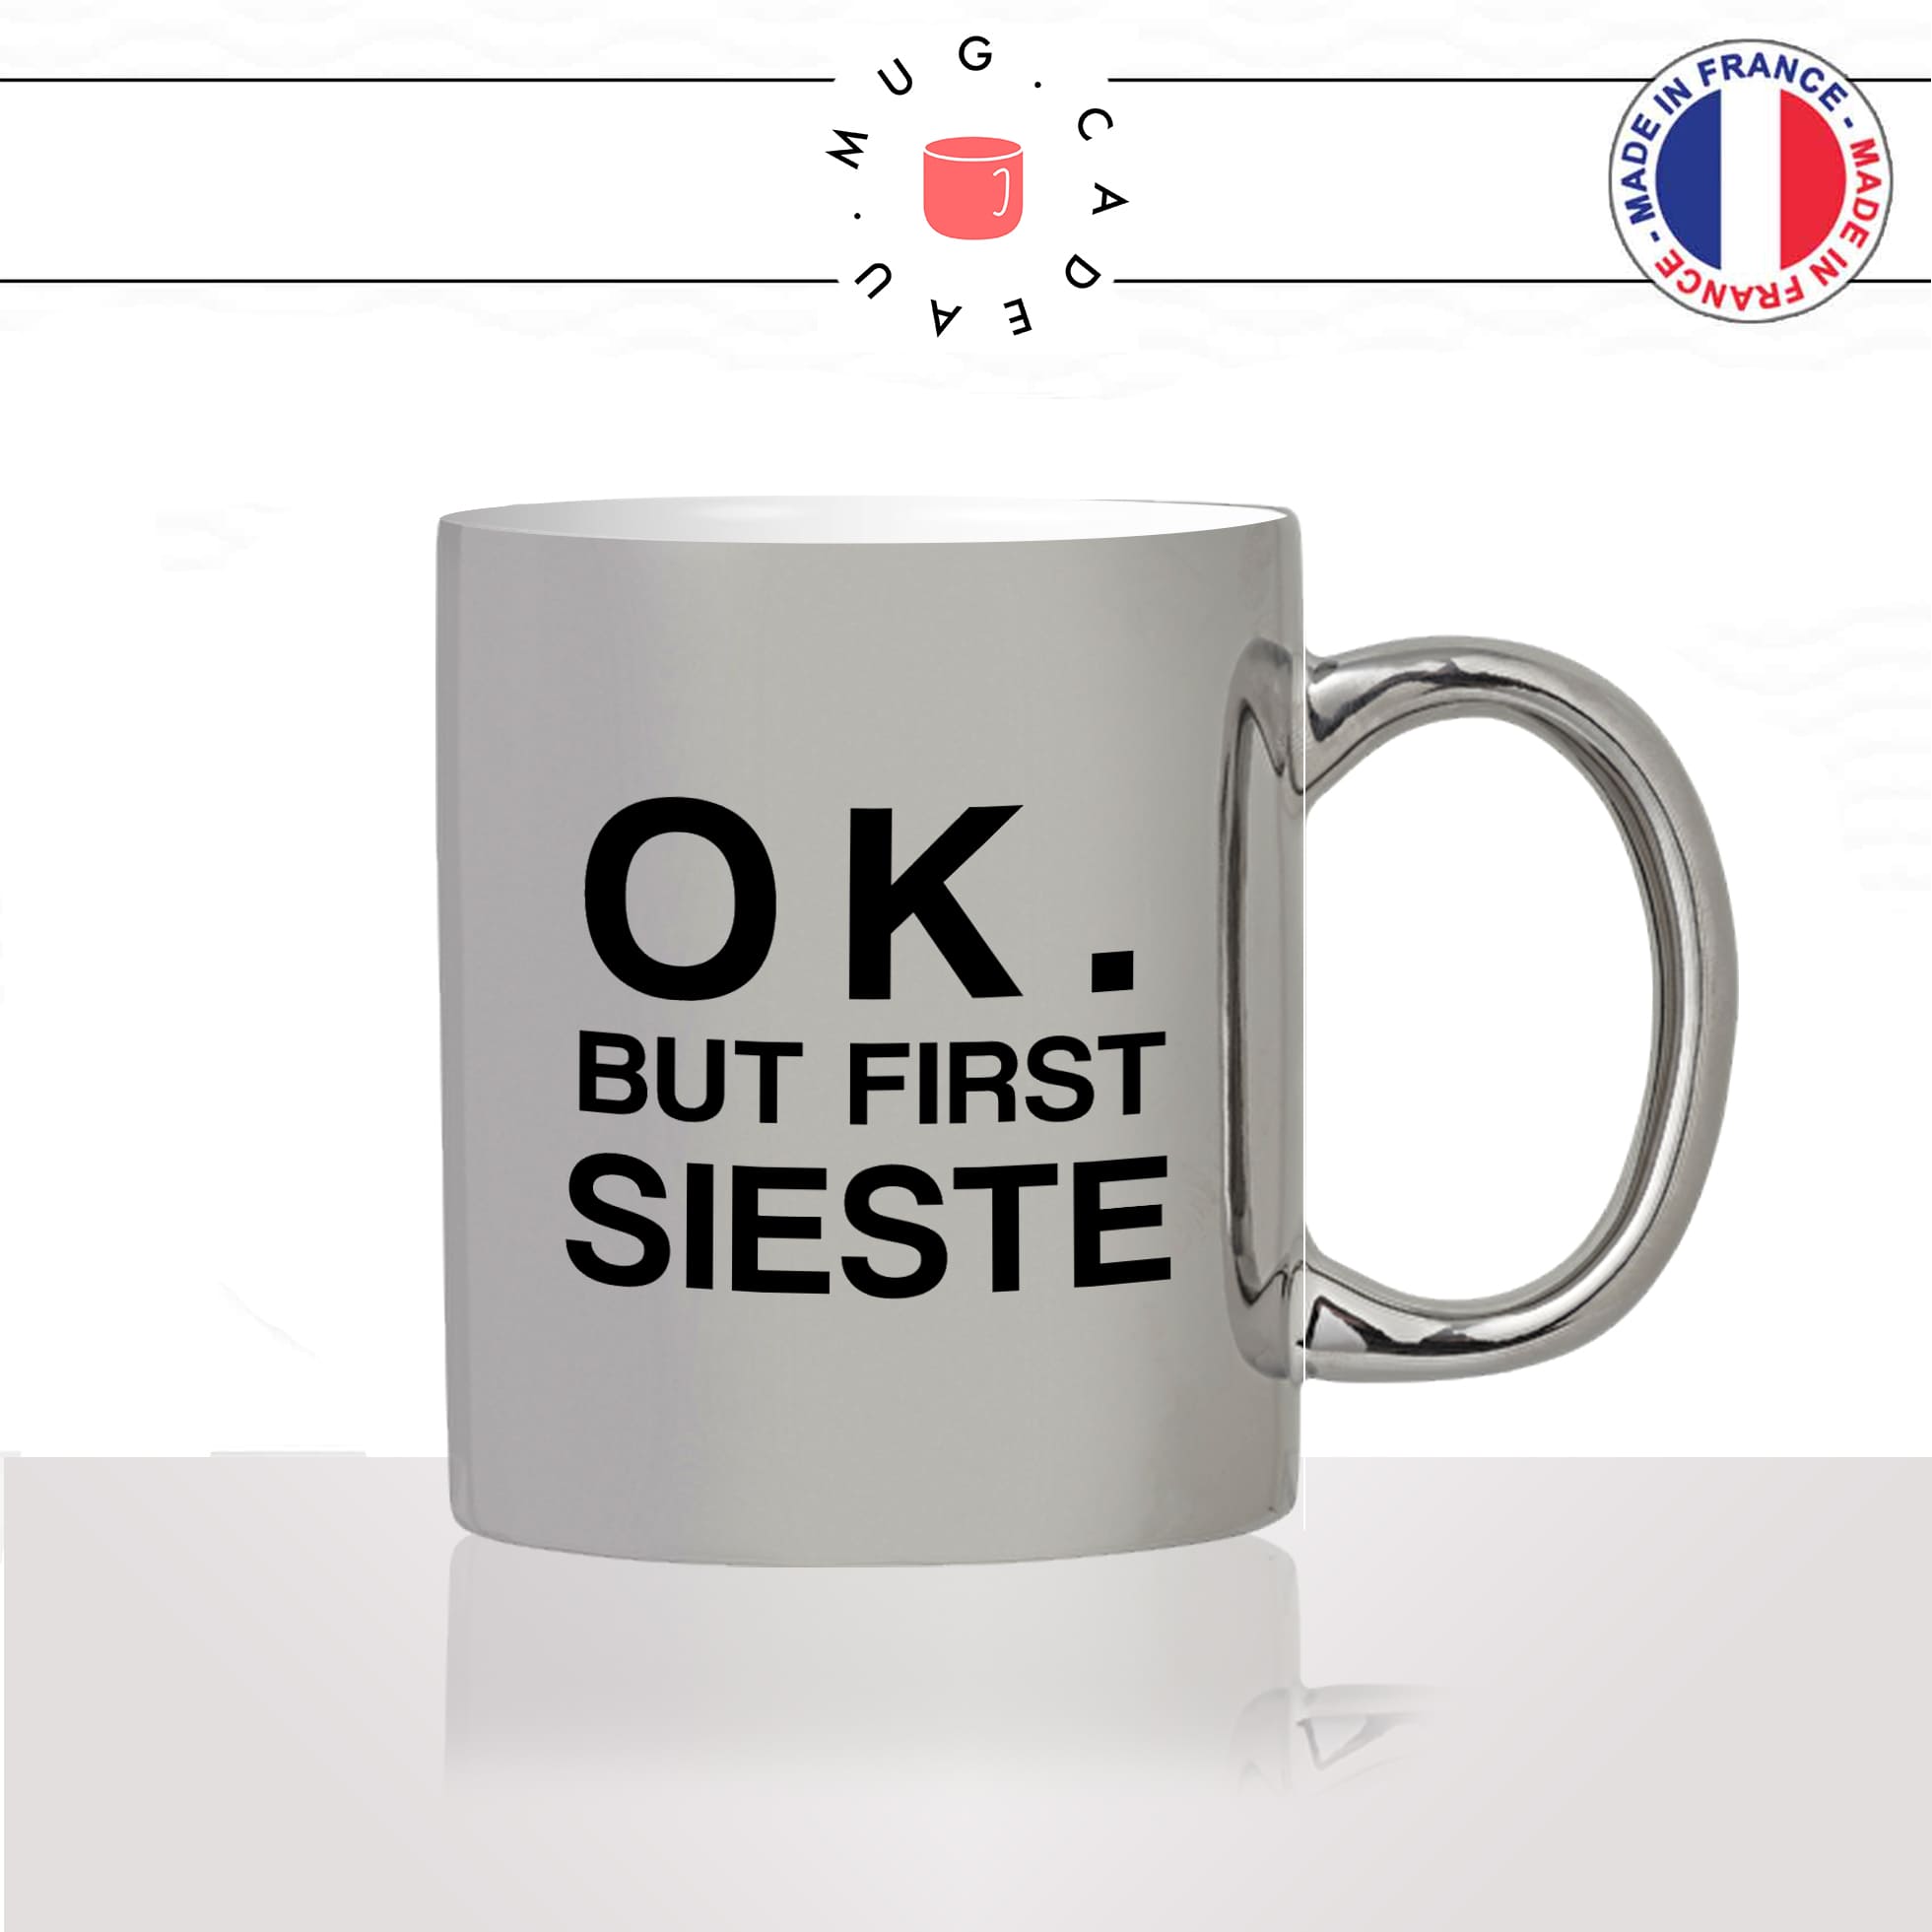 mug-tasse-argent-argenté-silver-ok-but-first-sieste-dimanche-flemme-collegue-copines-femme-homme-idée-cadeau-fun-cool-café-thé-original2